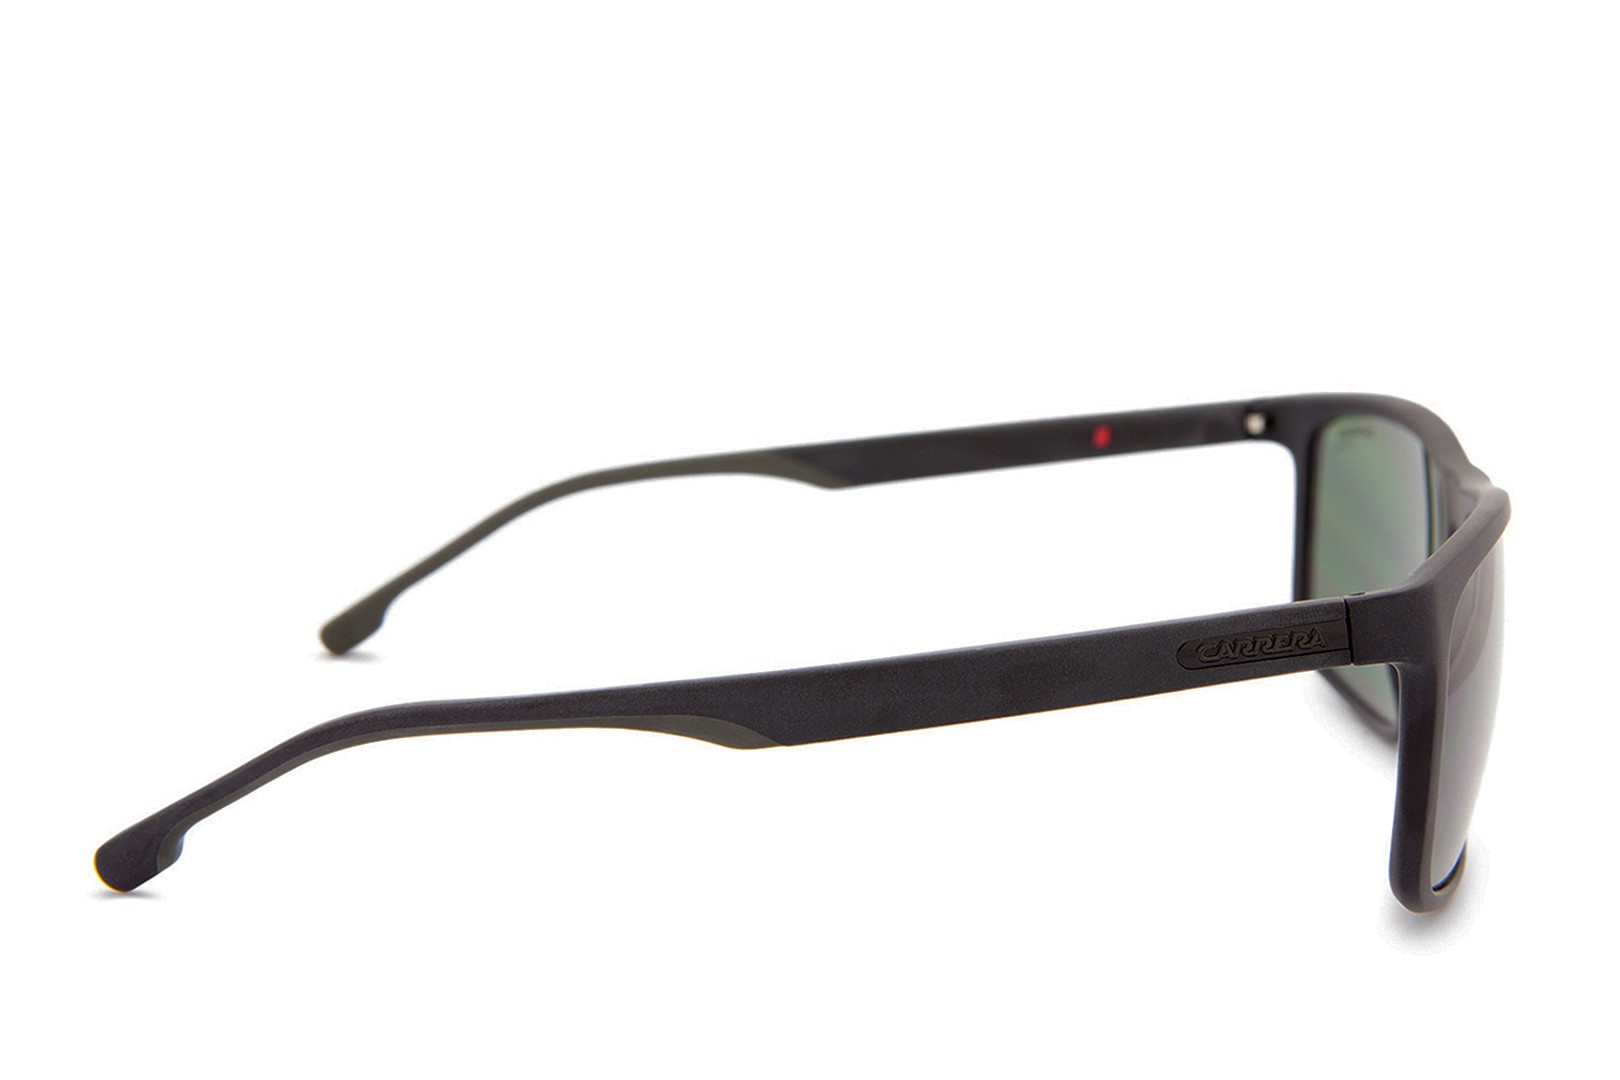 CarreraCarrera Occhiali da sole 8047/S 7ZJ/UC occhiali Uomo colore Nero lente verde taglia 58 mm Marca 